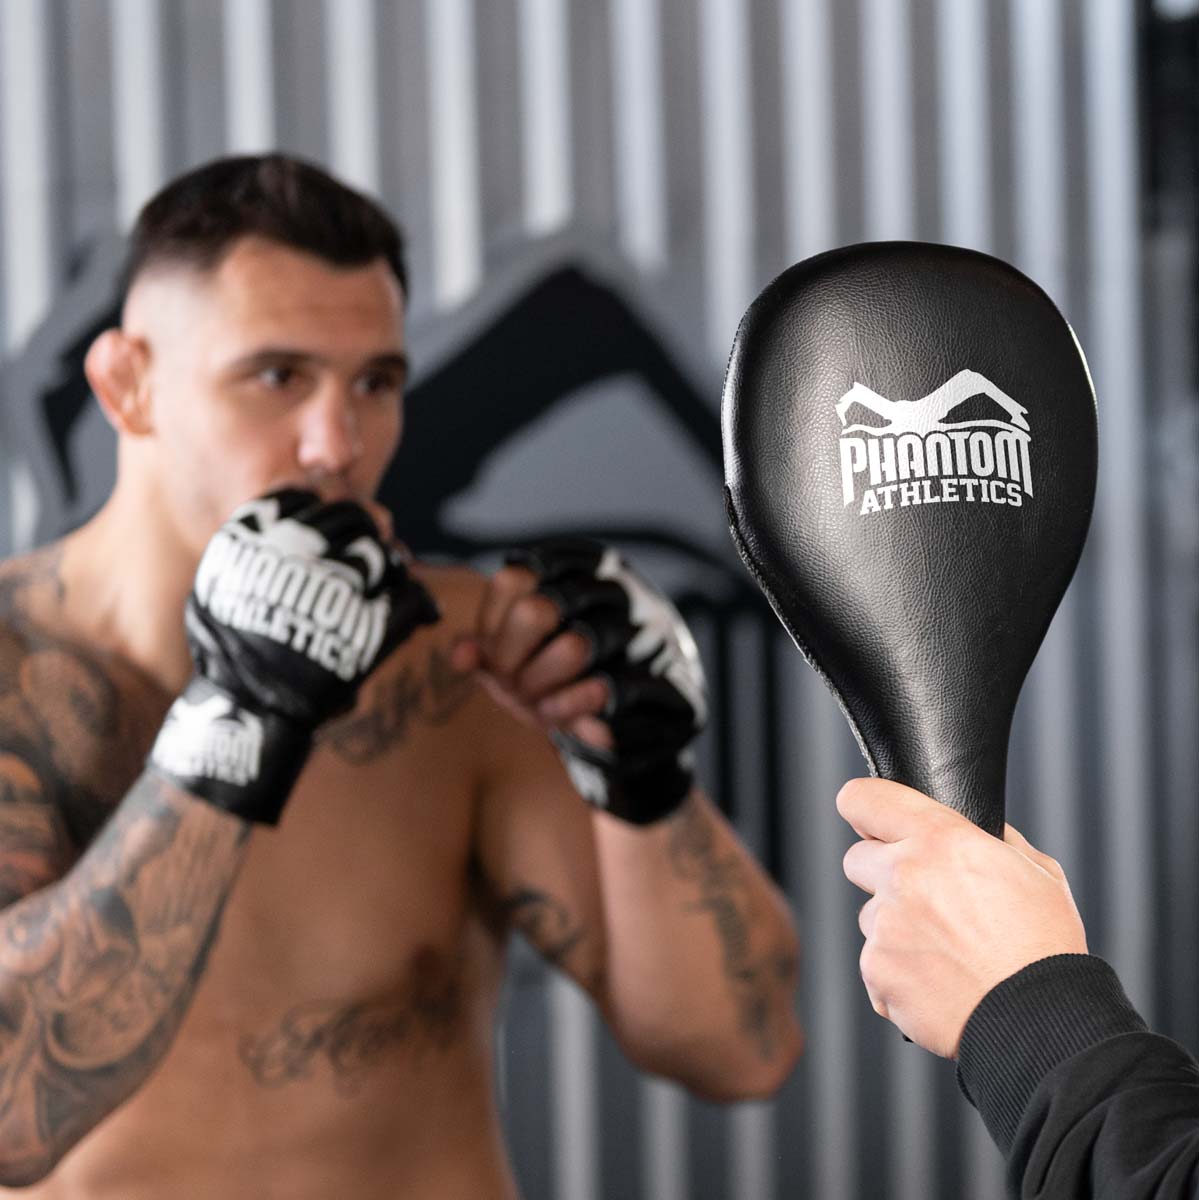 Die Phantom Boxing Paddles sind die idealen Schlagpratzen um Speed und Präzision zu trainieren. Egal ob MMA, Boxen, Kickboxen oder Muay Thai. Mit den Phantom Boxing Paddles bringst du dein Striking auf das nächste Level.